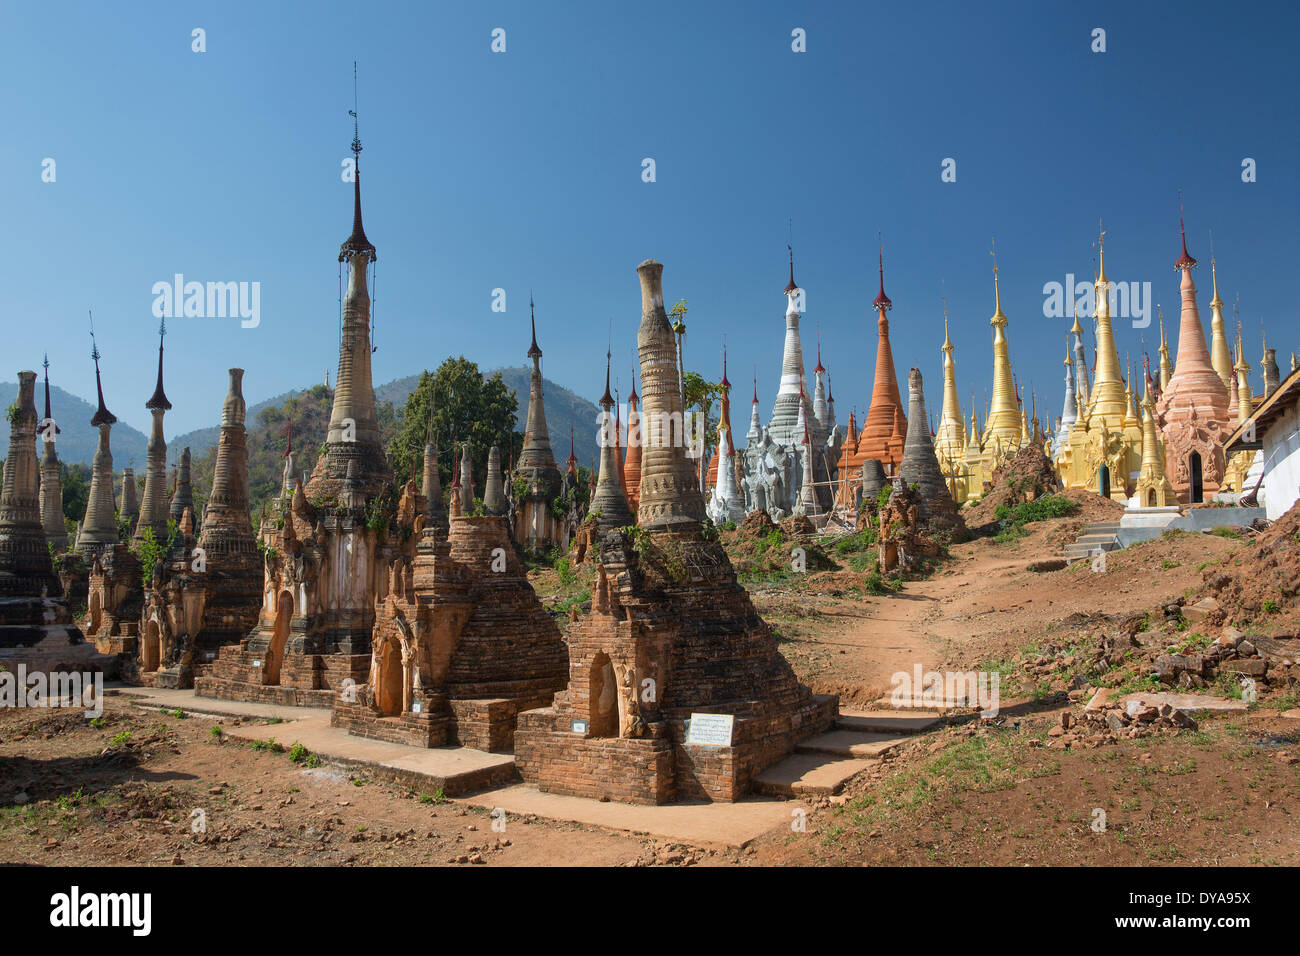 Indeinn Inle Myanmar Burma Asien Architektur bunten exotischen berühmte Geschichte viele natürliche alt viel entfernten Ruinen Skyline Stockfoto